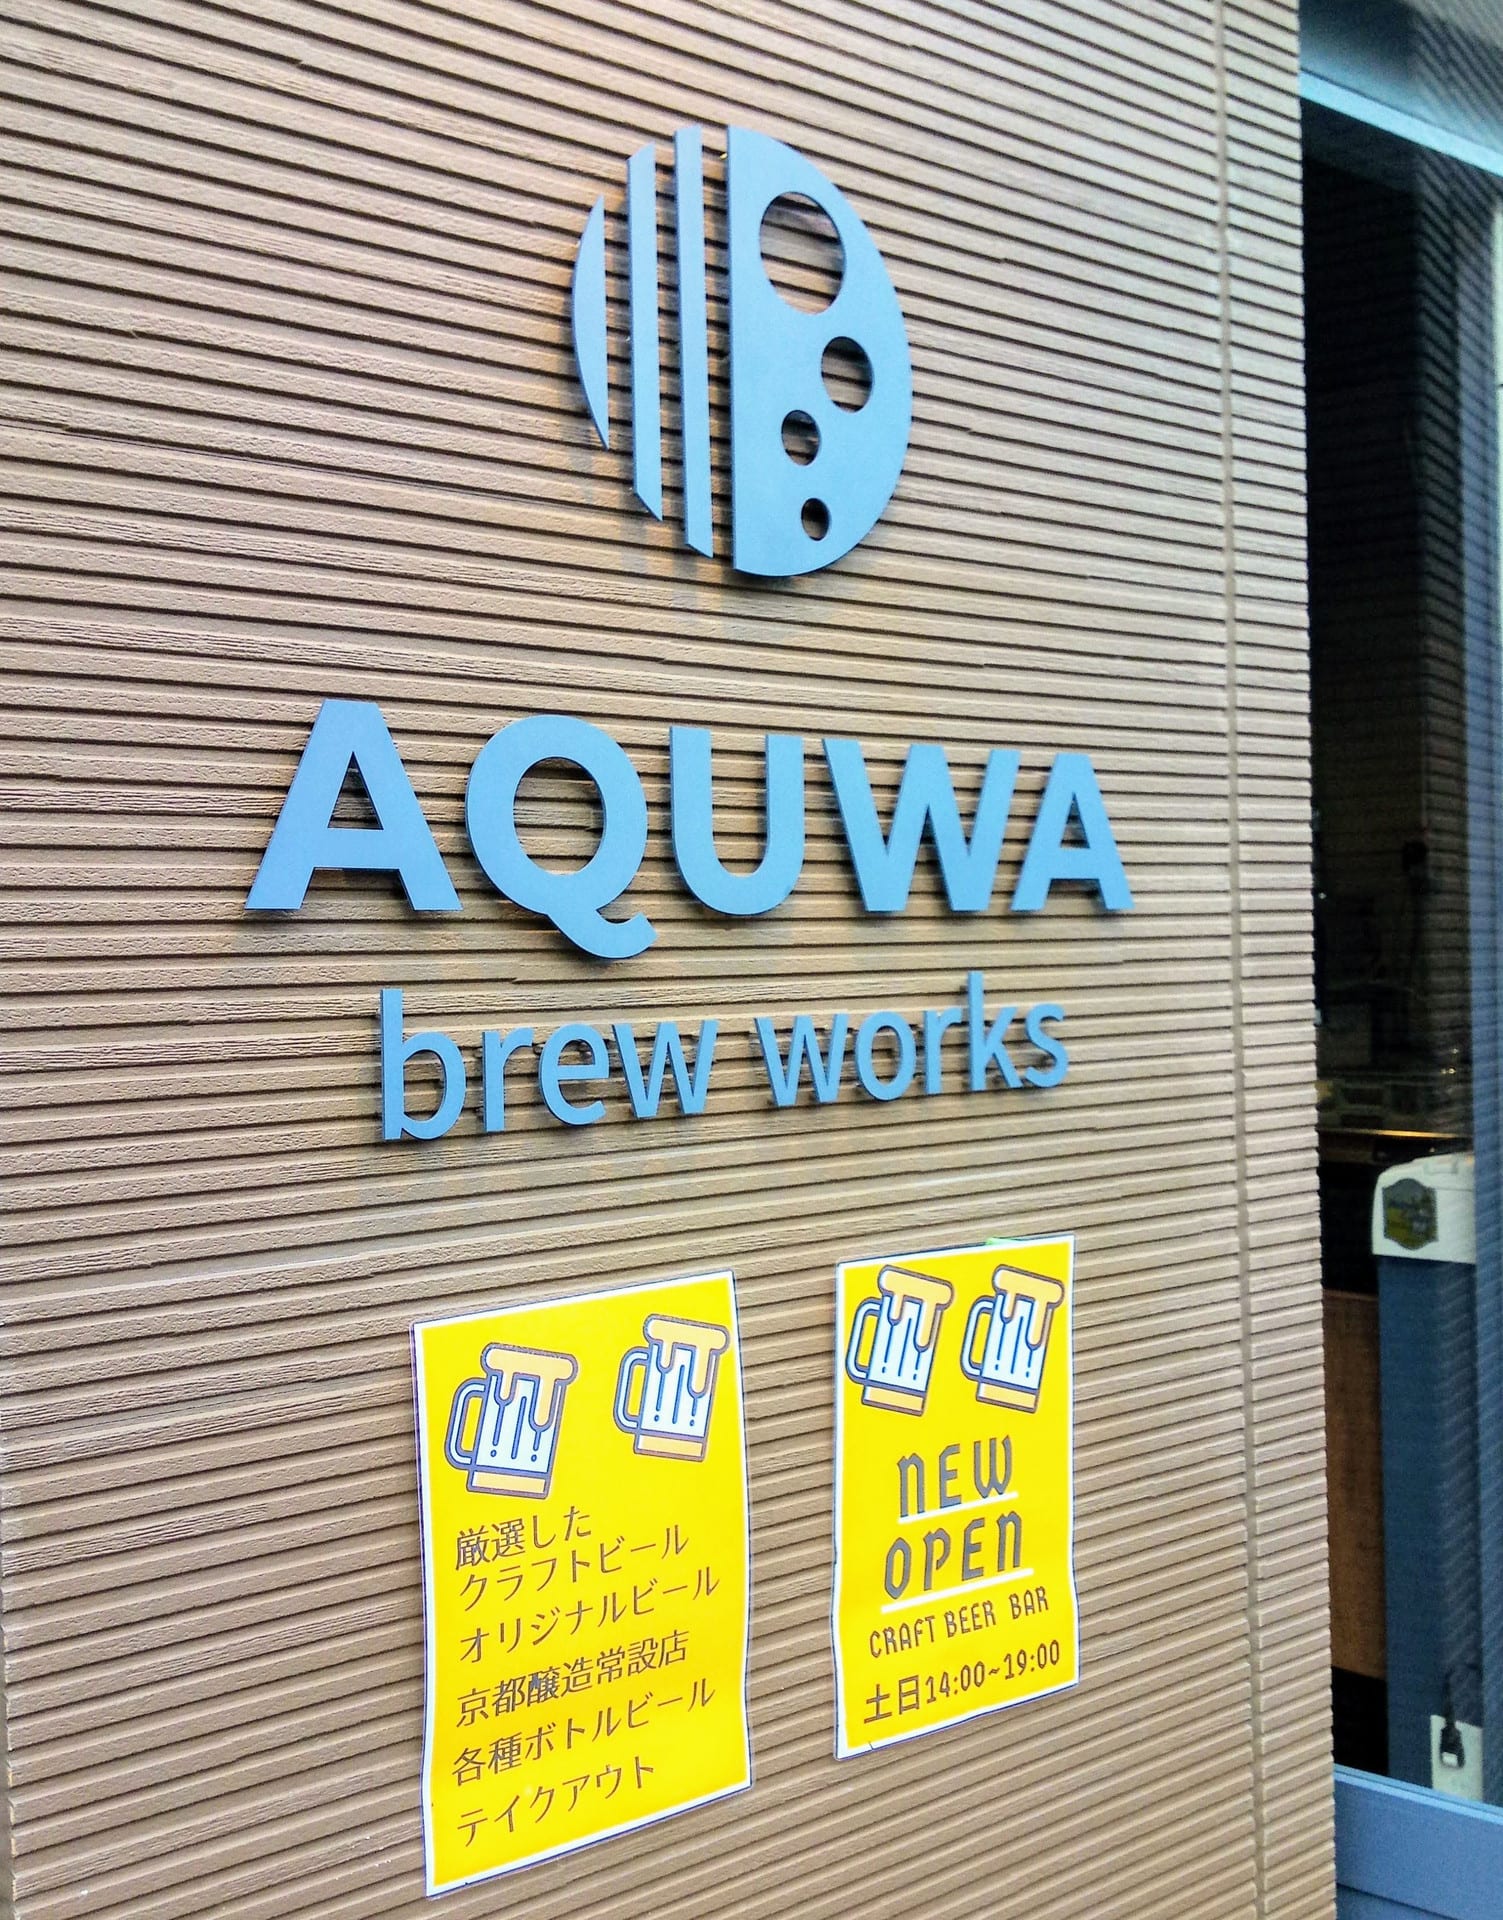 日曜午後は新規オープン店でクラフトビール飲み比べ 南浦和駅東口の アクワブリューワークス セーチンズワールド